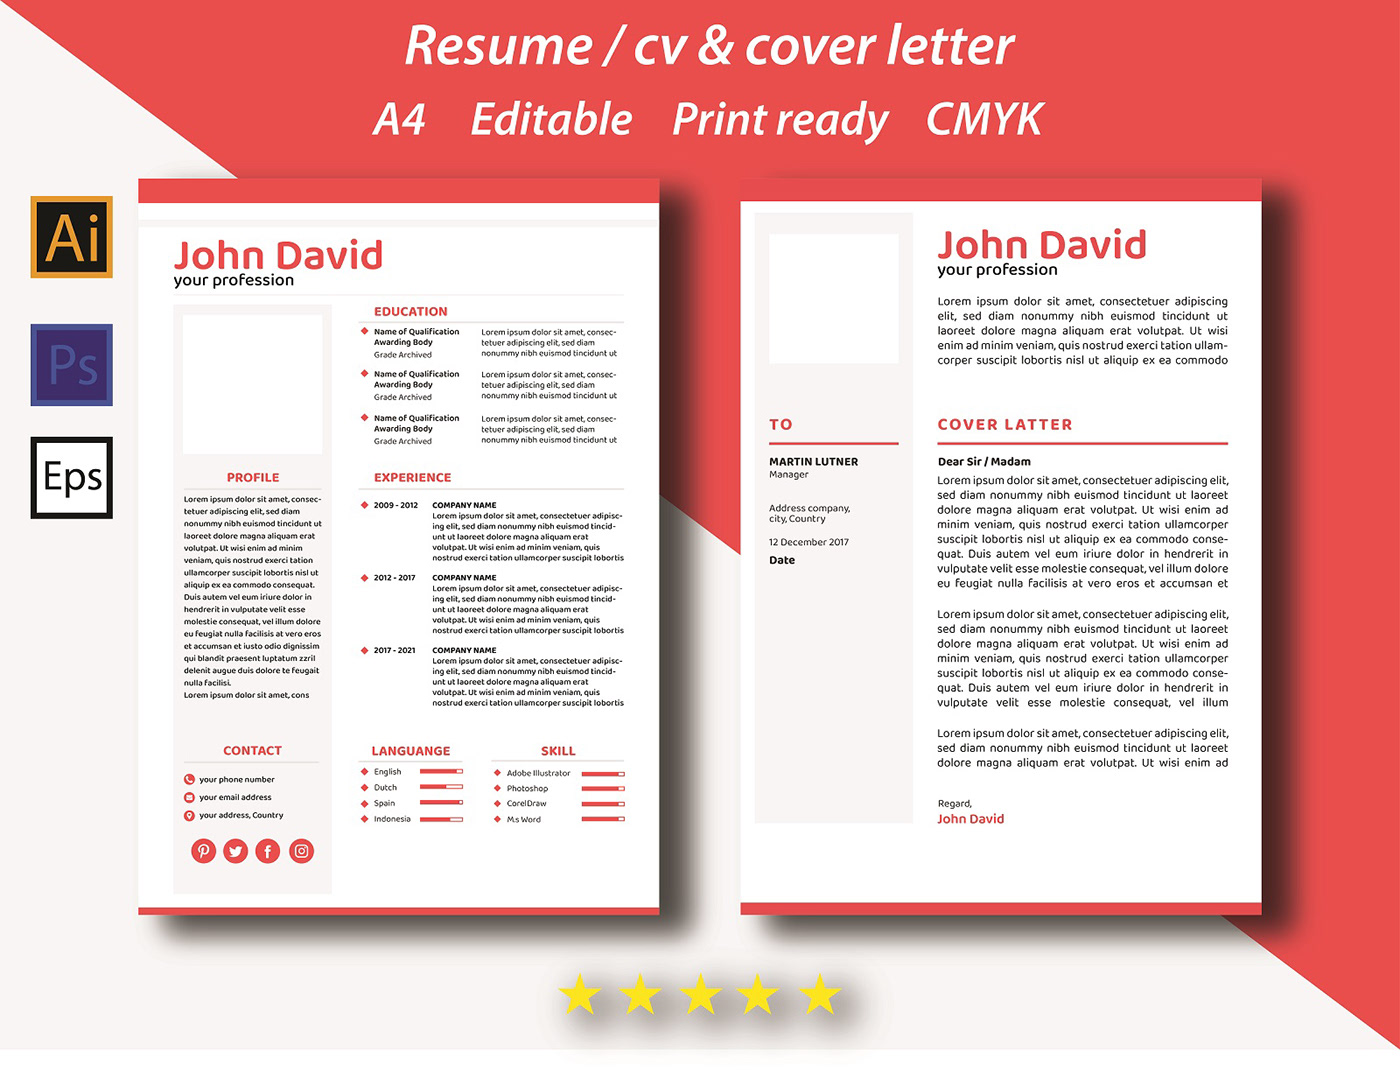 cover letter design cover letter template cv design resume design resume template